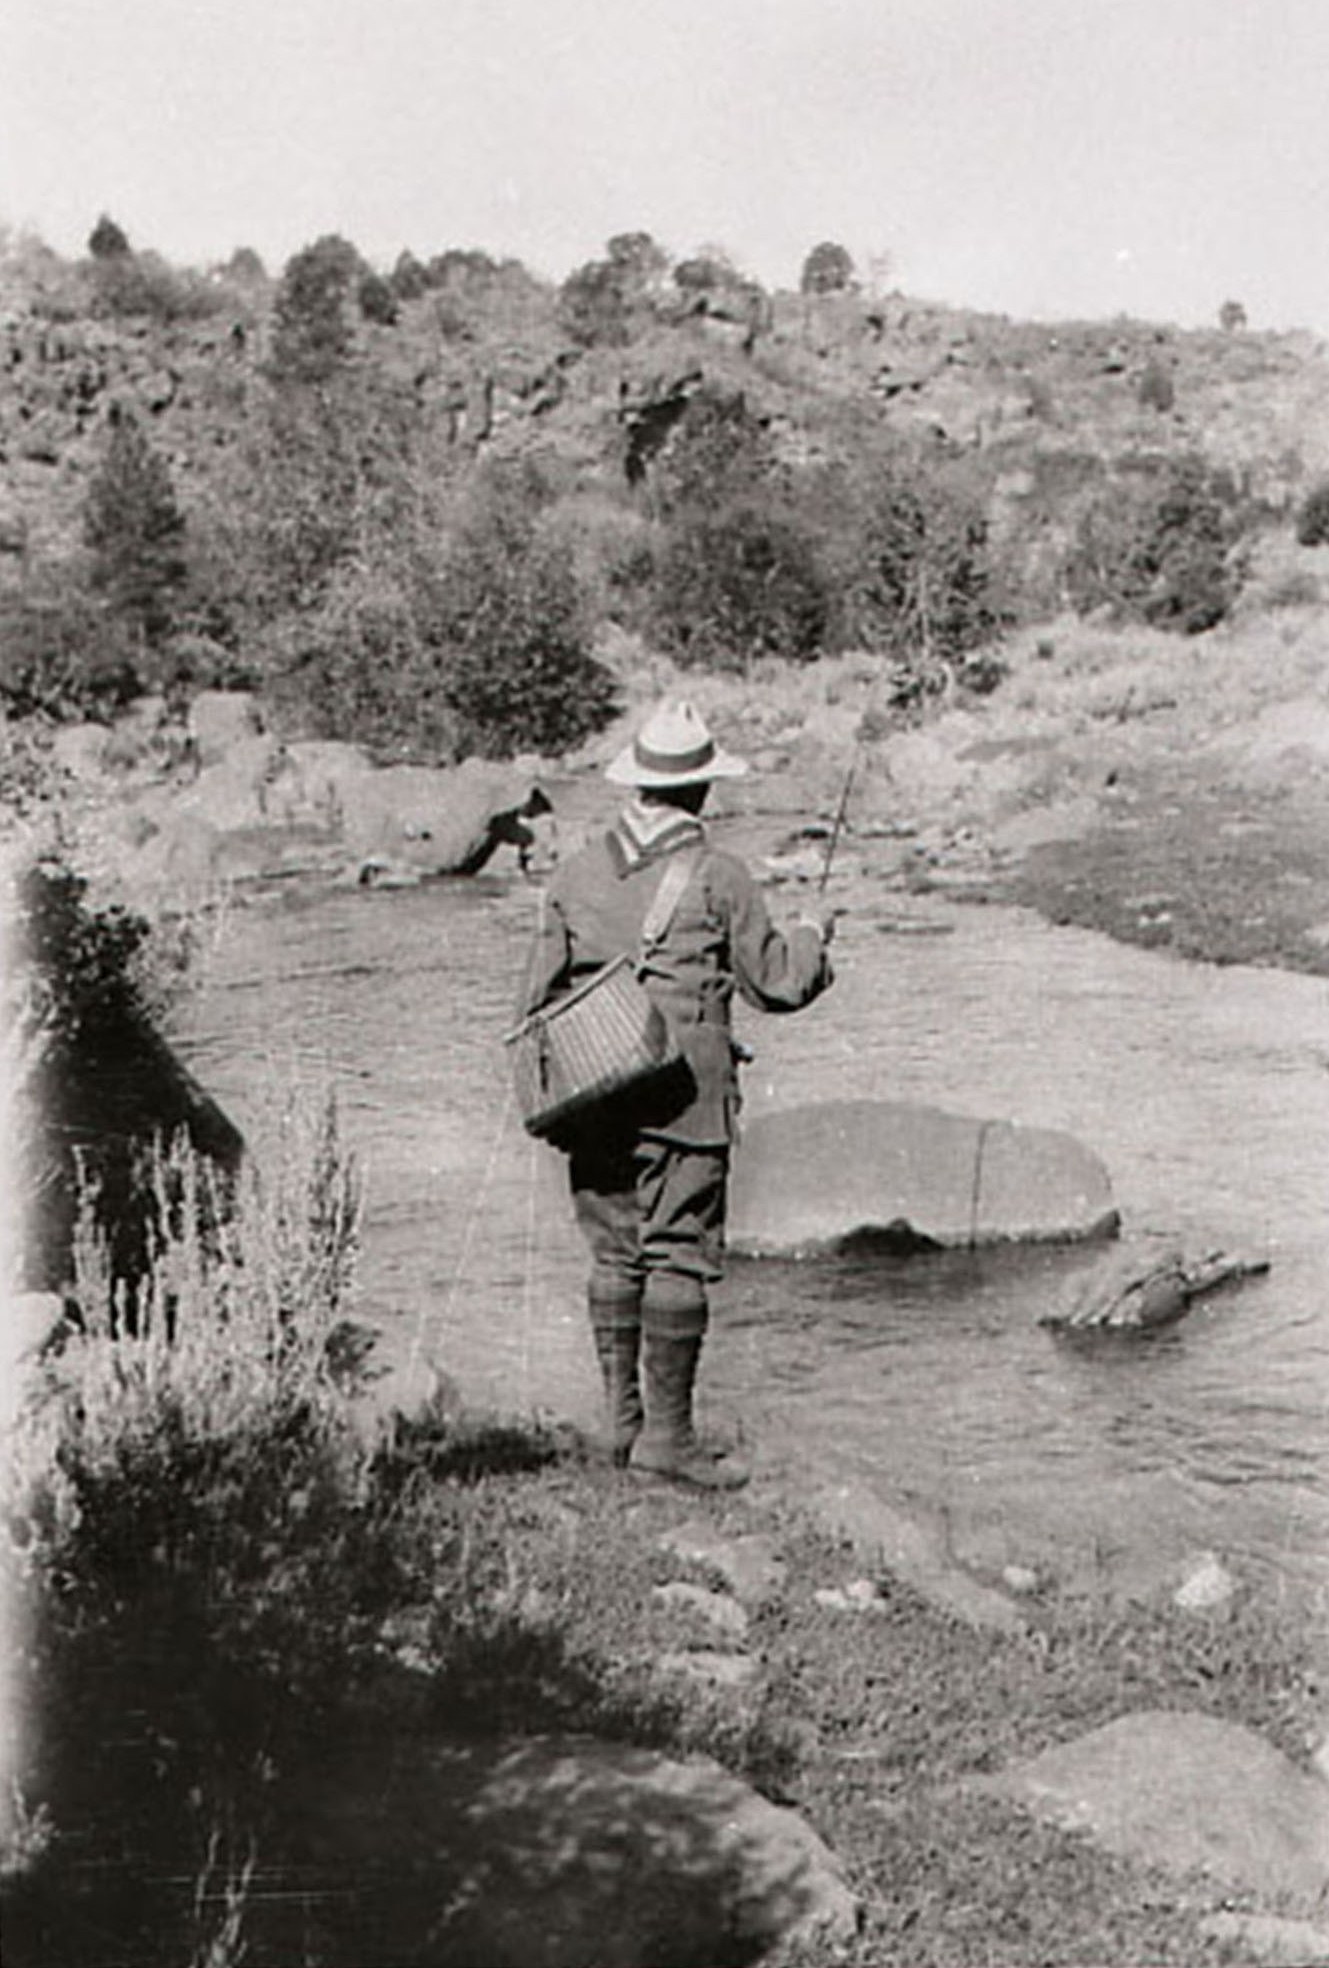 John R. Wallis fishing